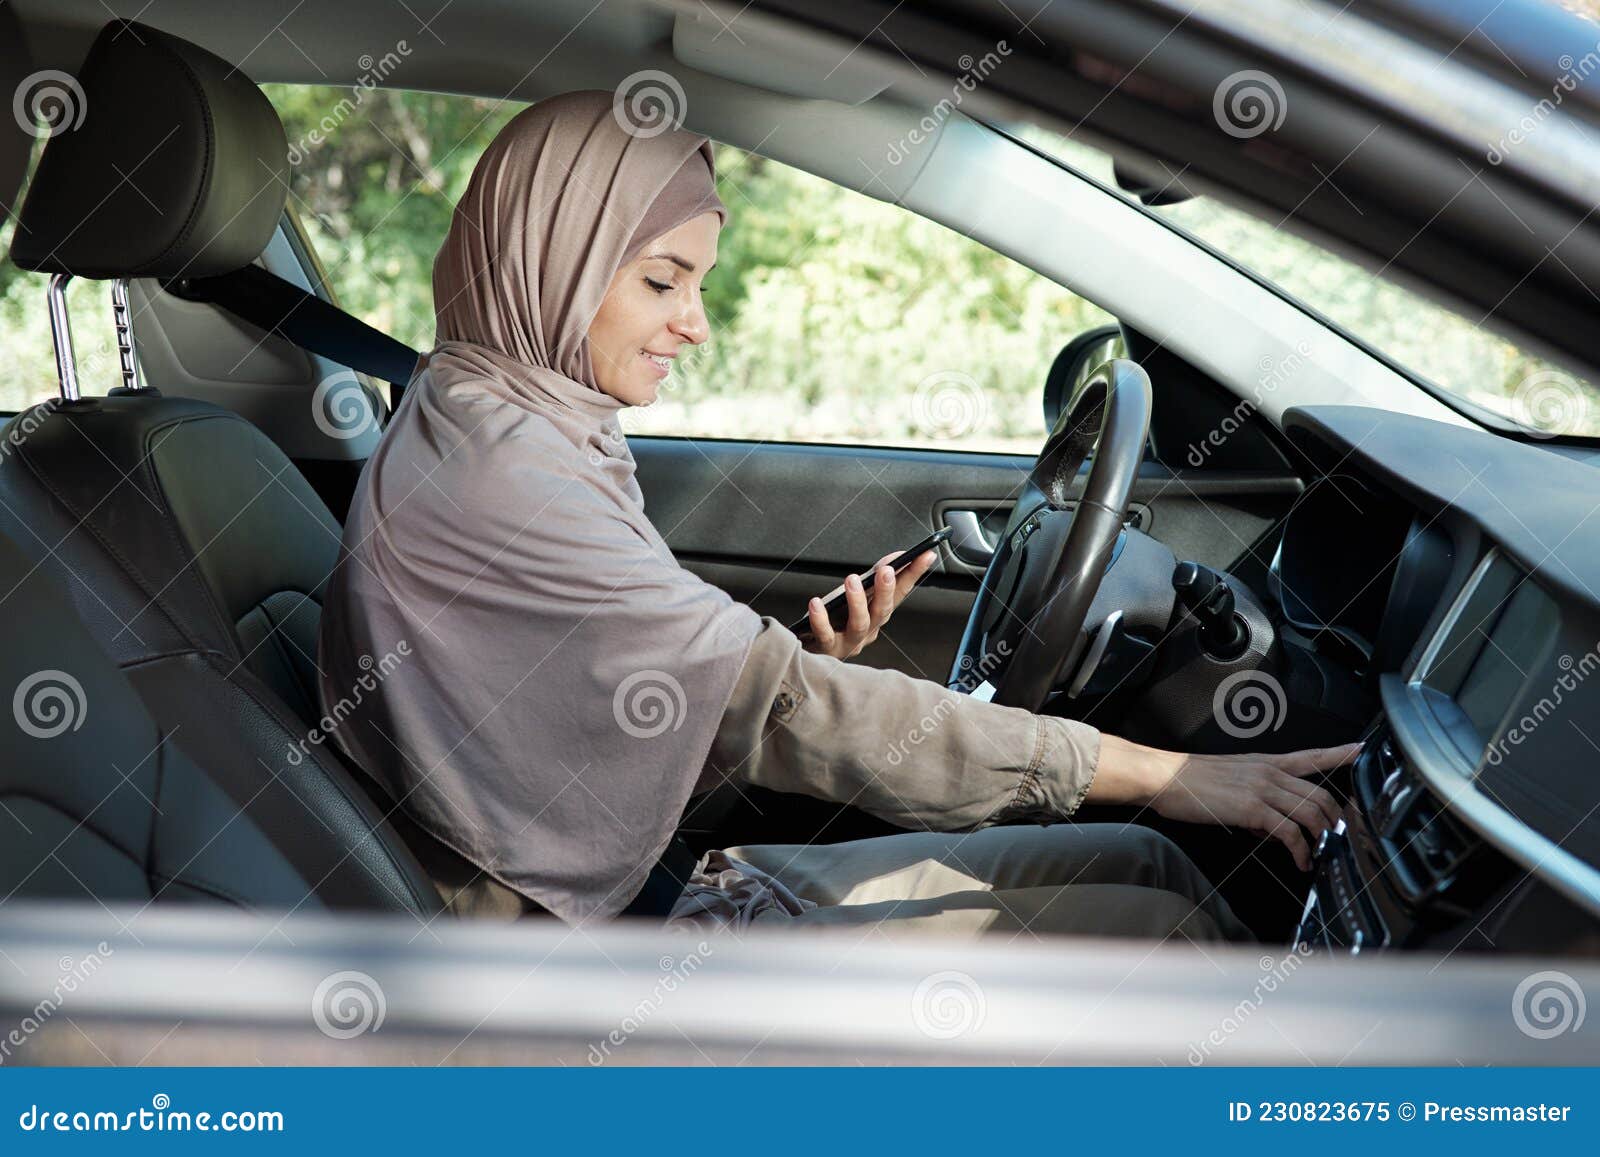 https://thumbs.dreamstime.com/z/musik-im-auto-einschalten-horizontale-seitliche-aufnahme-einer-jungen-erwachsenen-muslimfrau-die-sitzt-und-mit-ihrem-smartphone-230823675.jpg